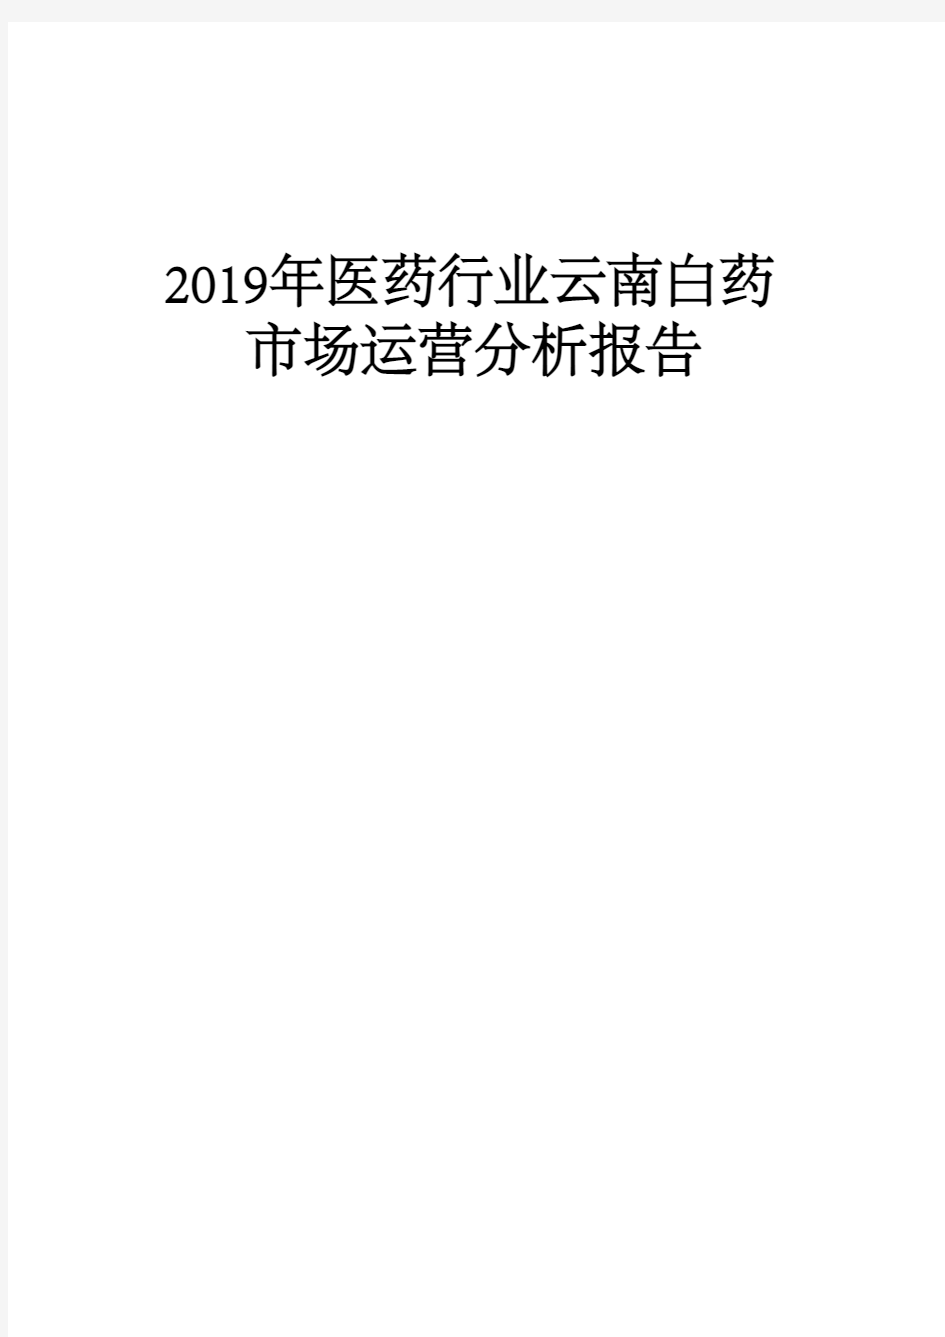 2019年医药行业云南白药市场运营分析报告